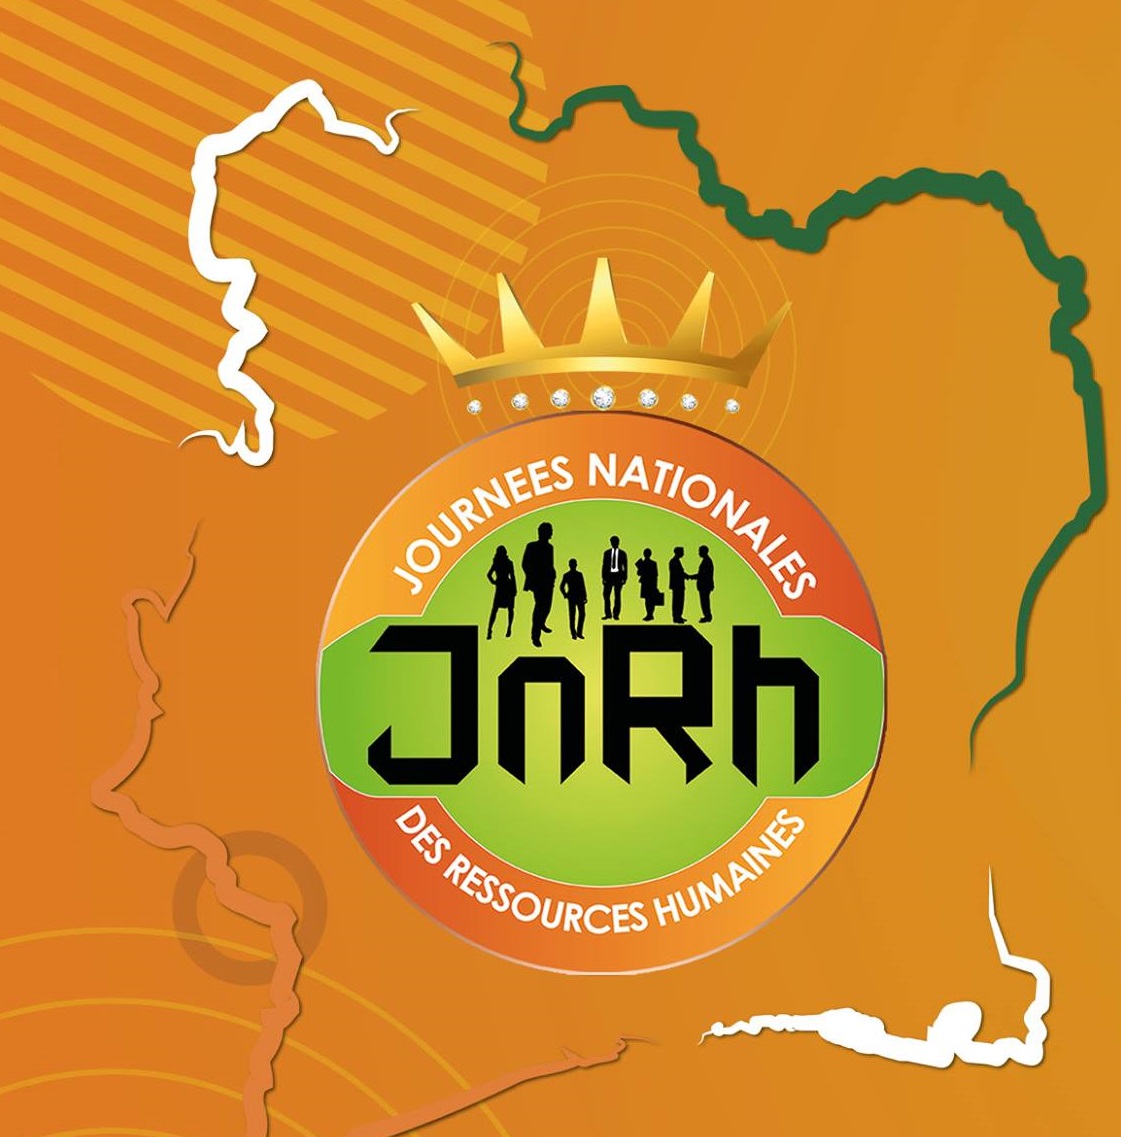 JNRH, Journées Nationales des Ressources Humaines